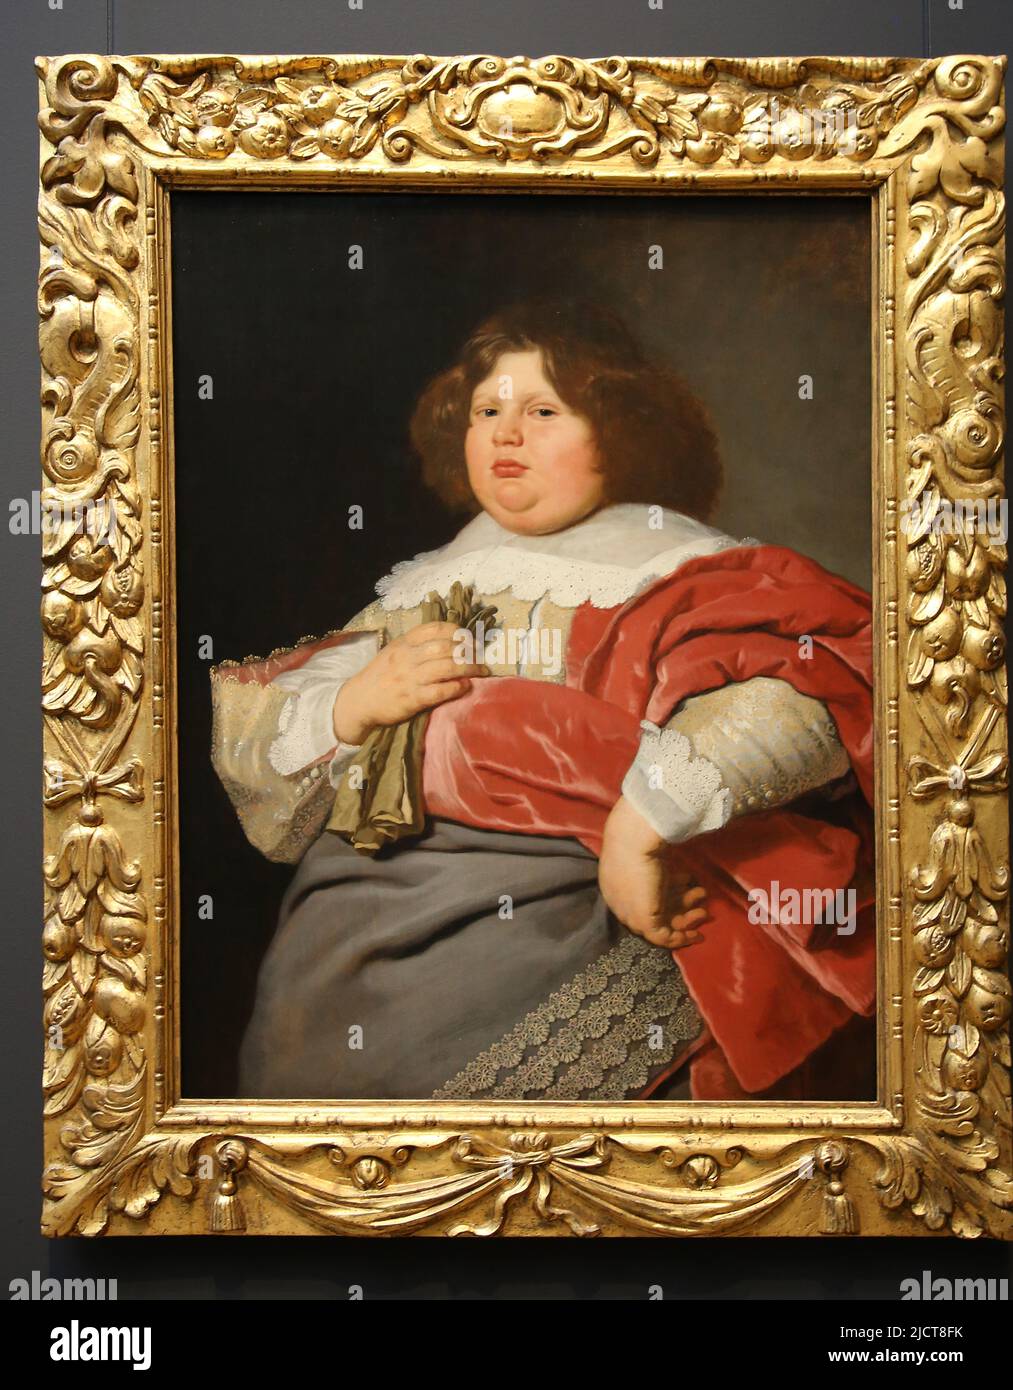 Porträt von Gerard Andriesz Bicker Bartholomeus van der Helst (1613-1670). Öl auf Platte, c. 1642 .Rijksmuseum. Amsterdam. Niederlande. Stockfoto